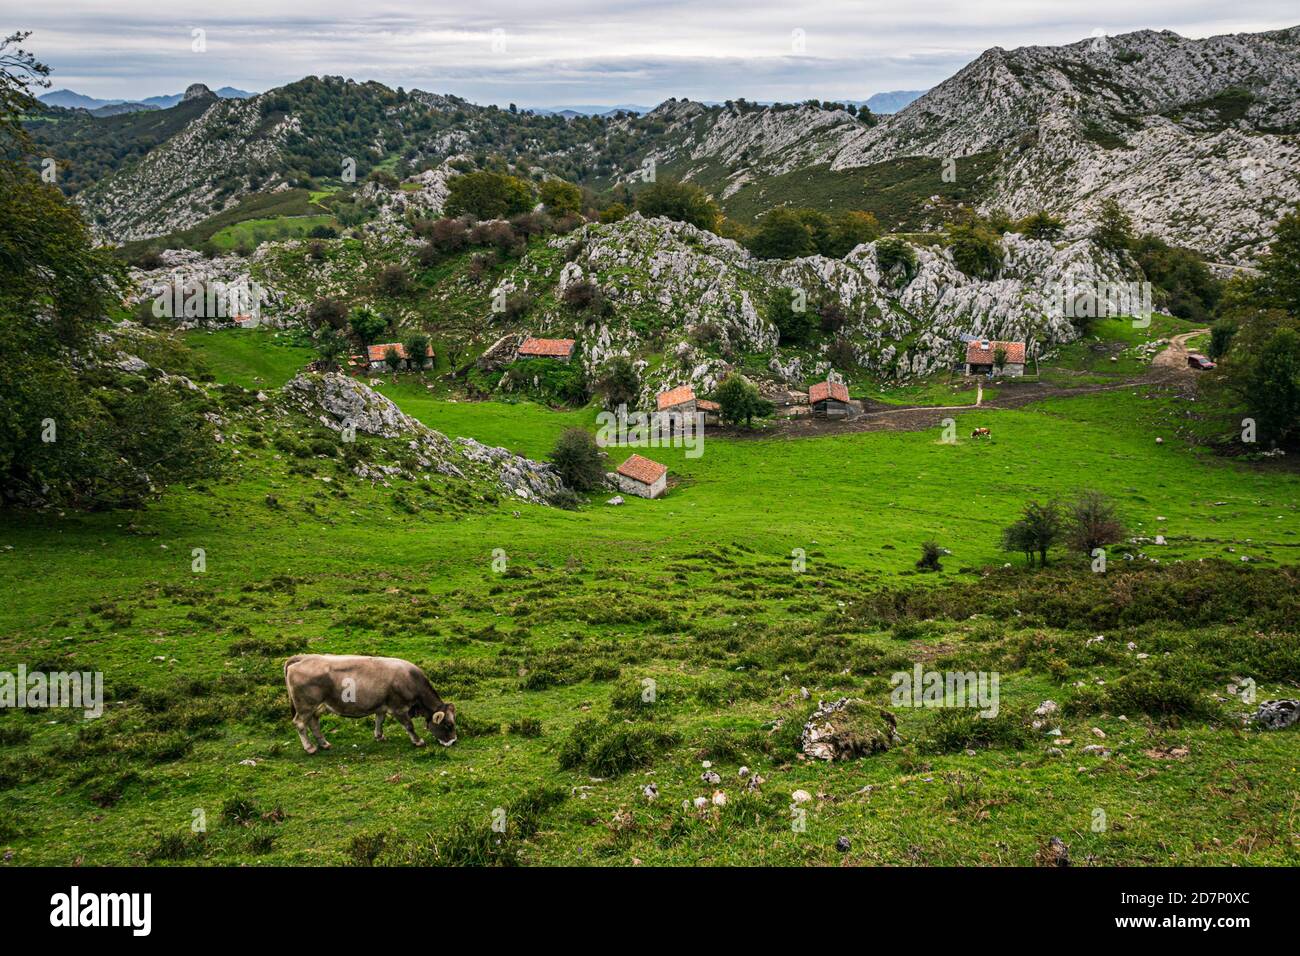 Le paysage rural des Asturies, Espagne. Prairie verte avec petits cottages dans le parc national de Picos de Europa, dans les Asturies, en Espagne. Banque D'Images